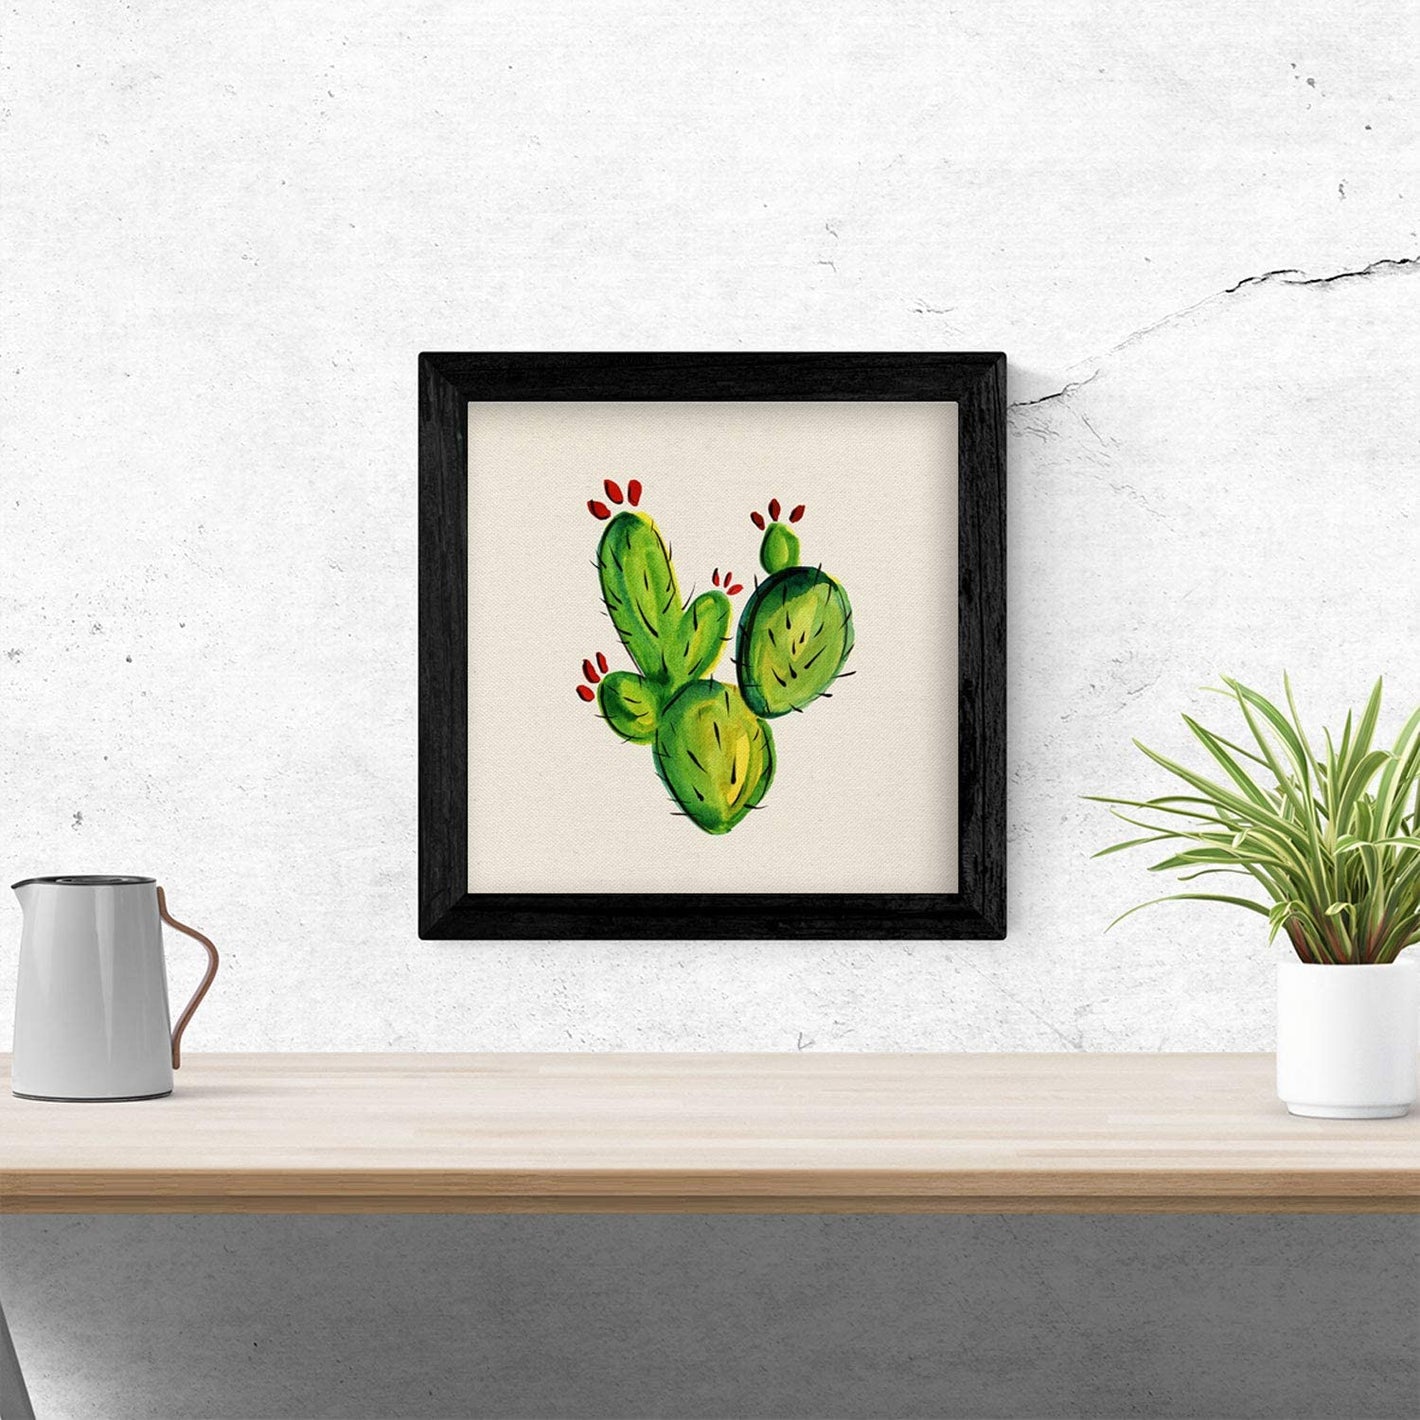 Imagen principal de la colección de Láminas Cactus: Una vista de cerca de un cactus de color verde con espinas largas y delgadas. La planta está enmarcada por un fondo blanco y una sombra suave, lo que hace que la ilustración resalte. Esta lámina es perf